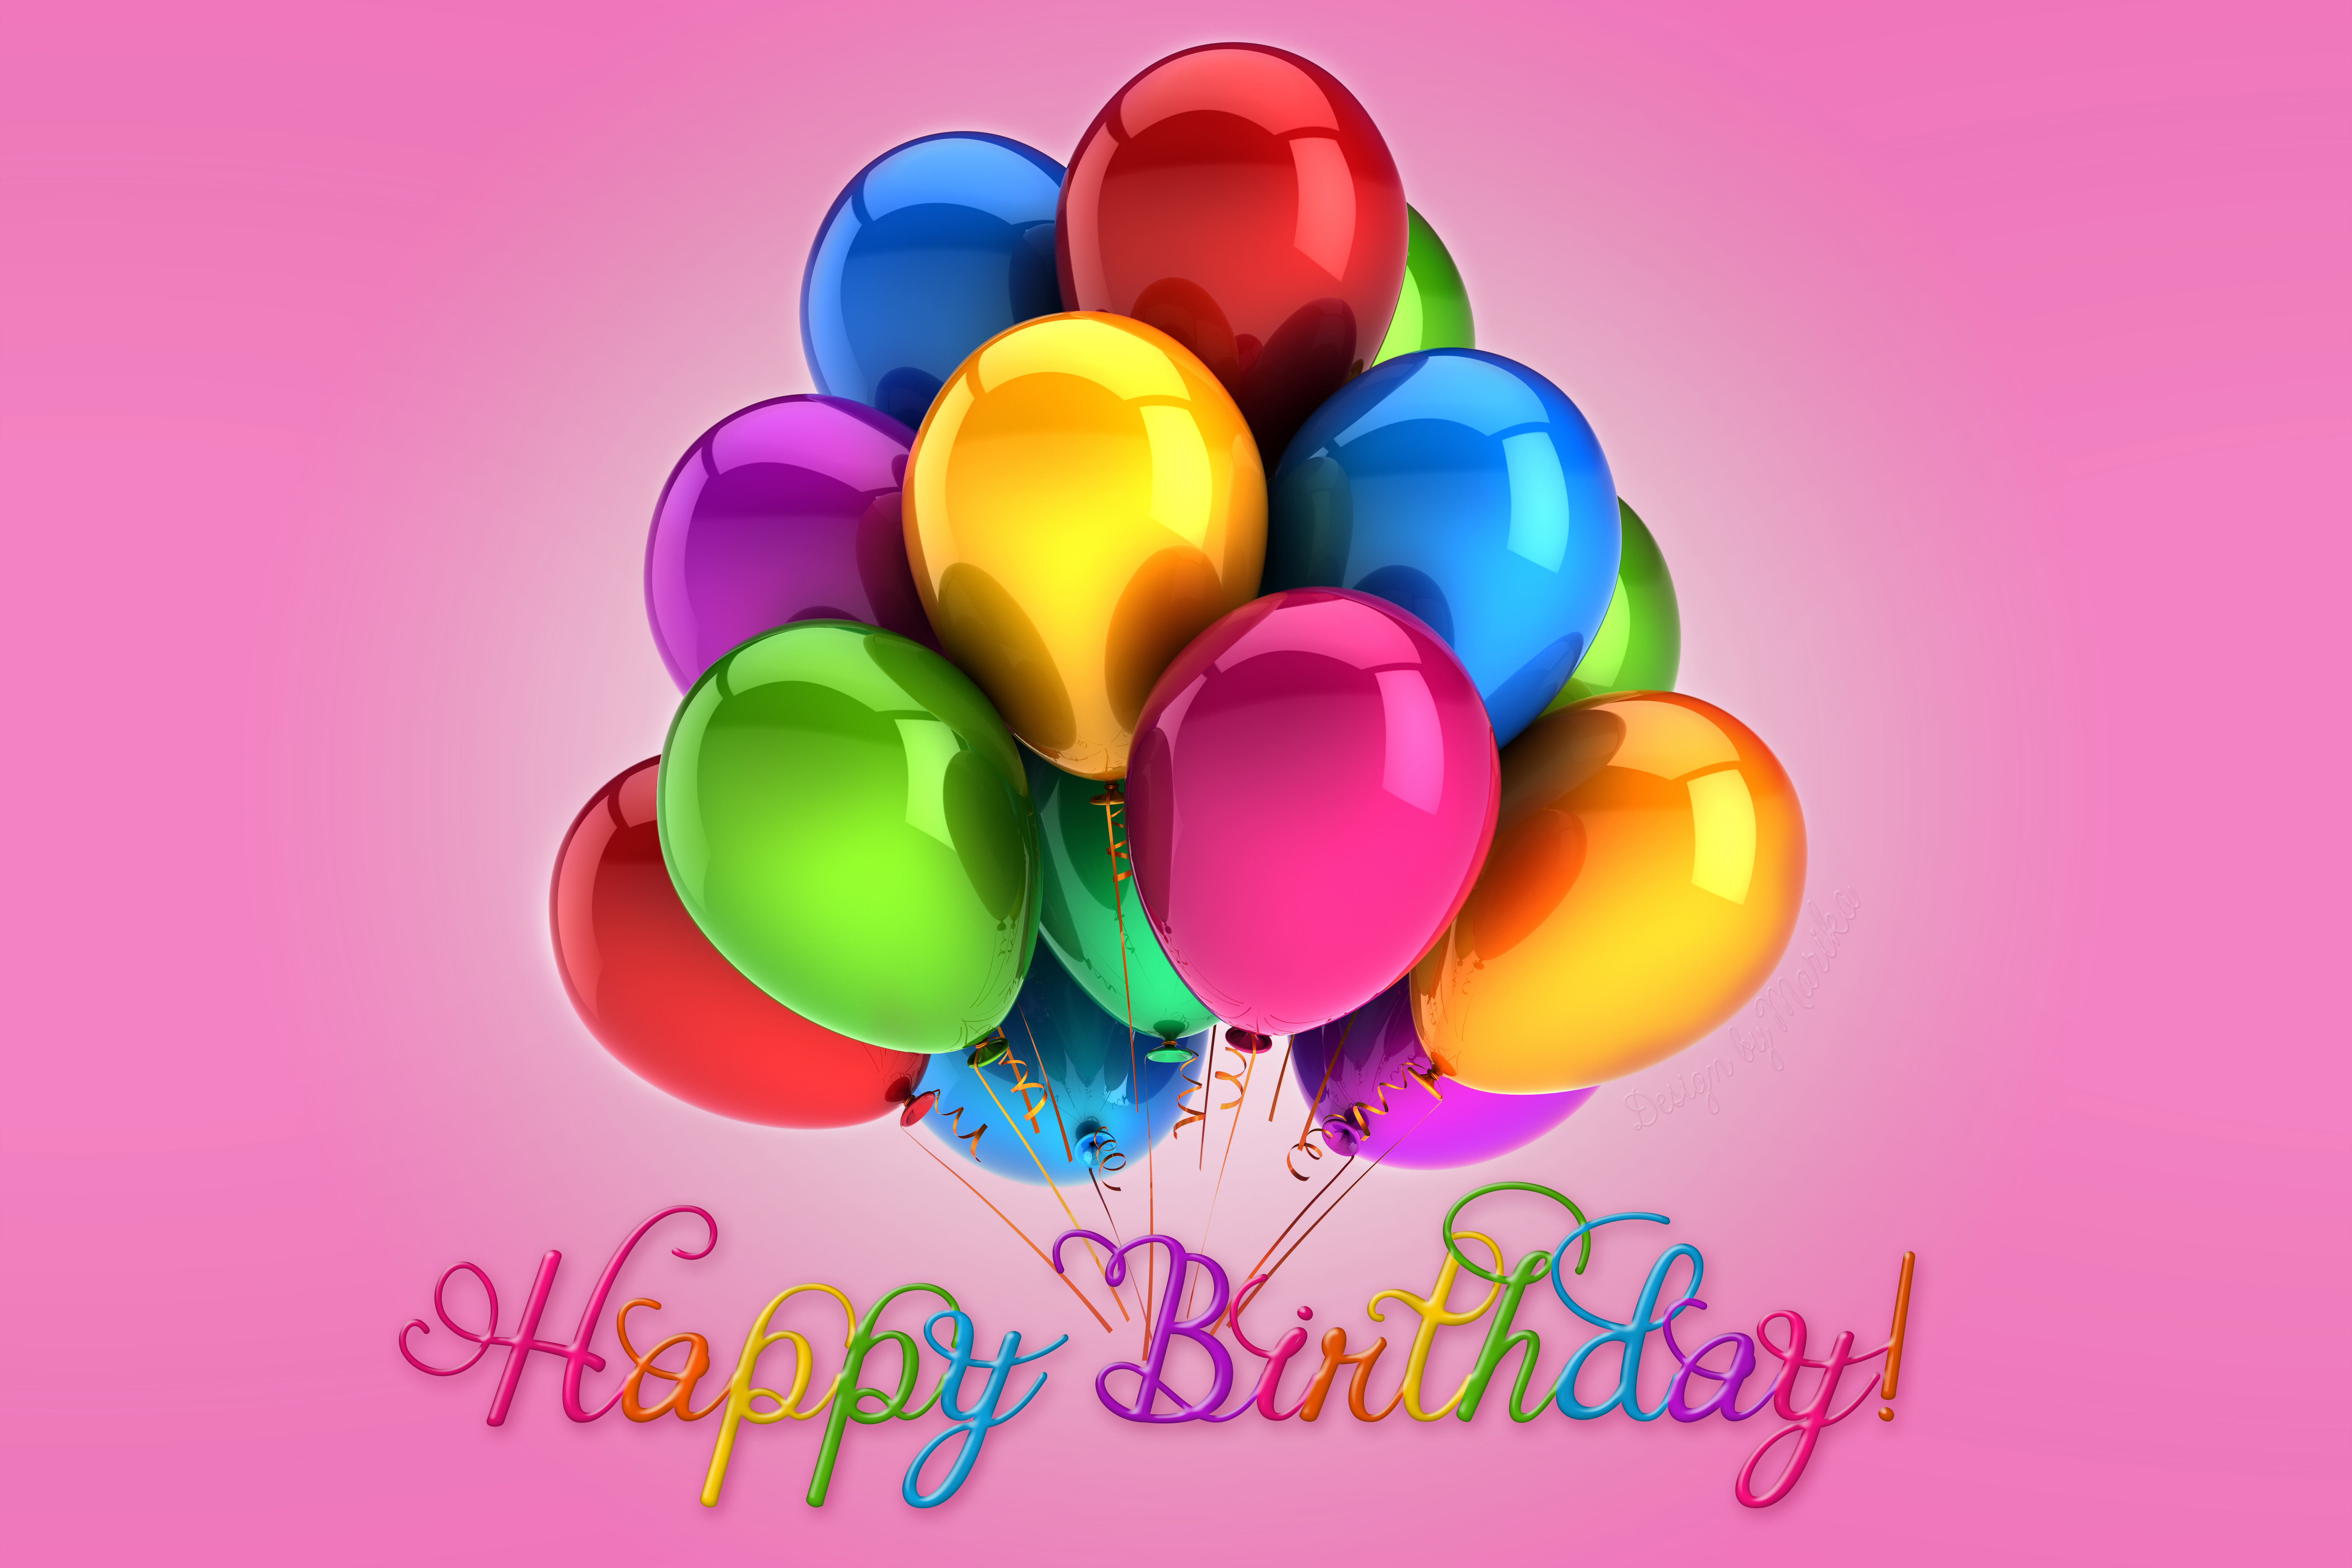 Balloon Birthday Colorful Happy Birthday 6000x4000